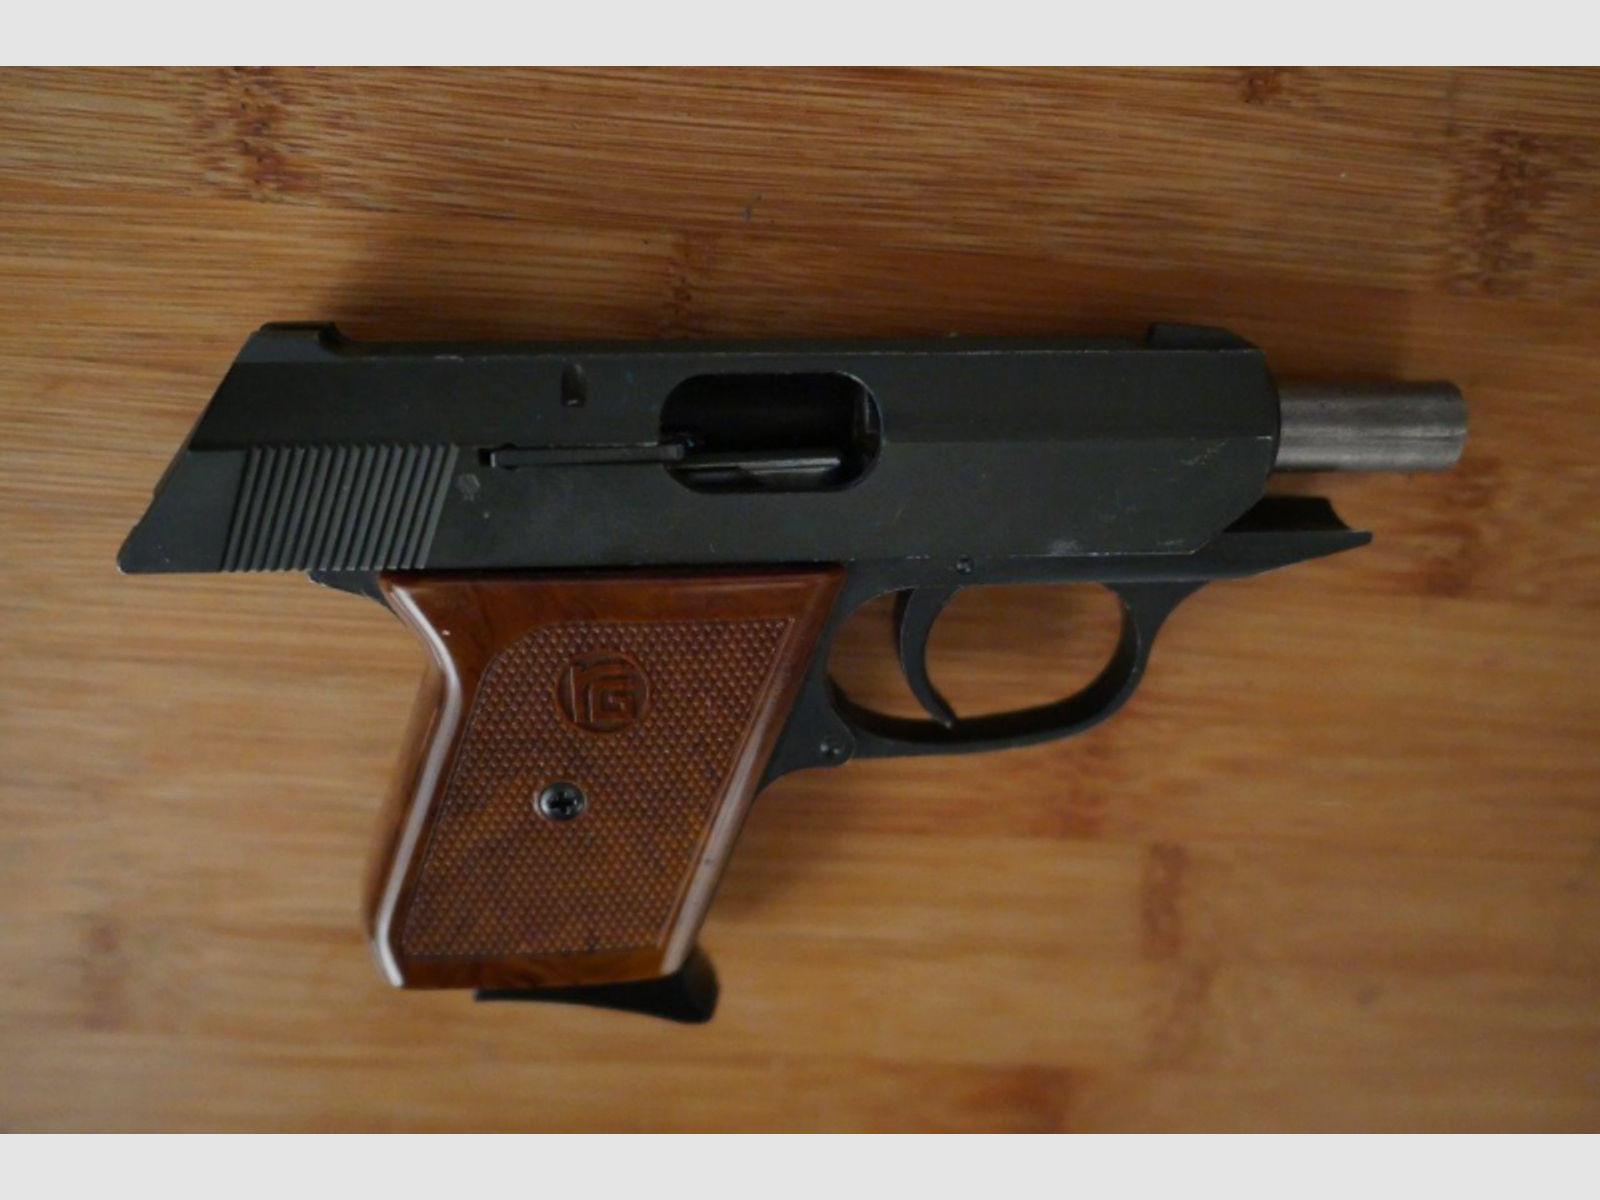 PTB Pistole Gas/Schreck, 8mm (Platz) altes Sammlerstück Röhm "Modell Walther PPK"